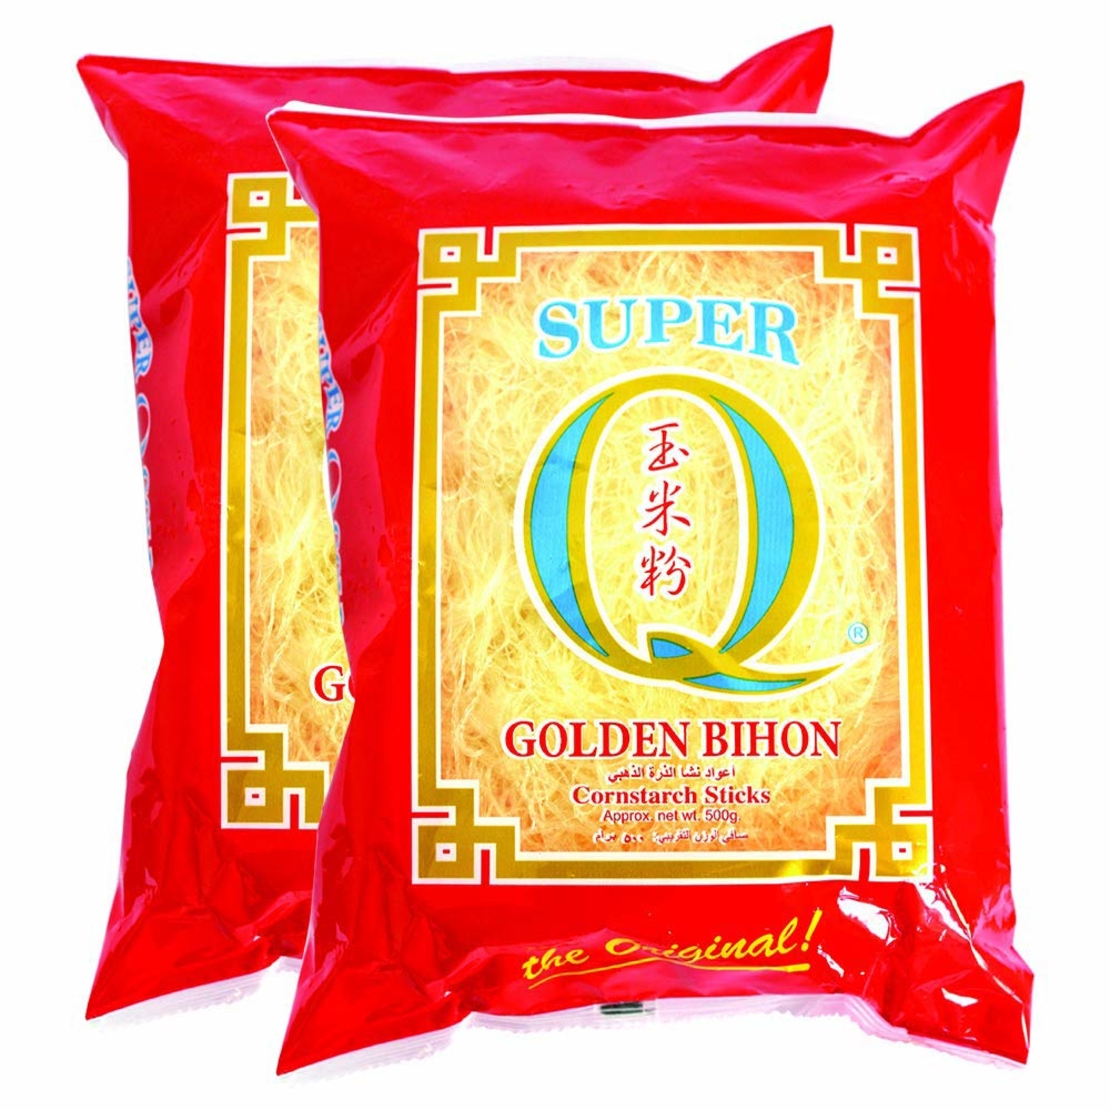 Super Q - Golden Bihon